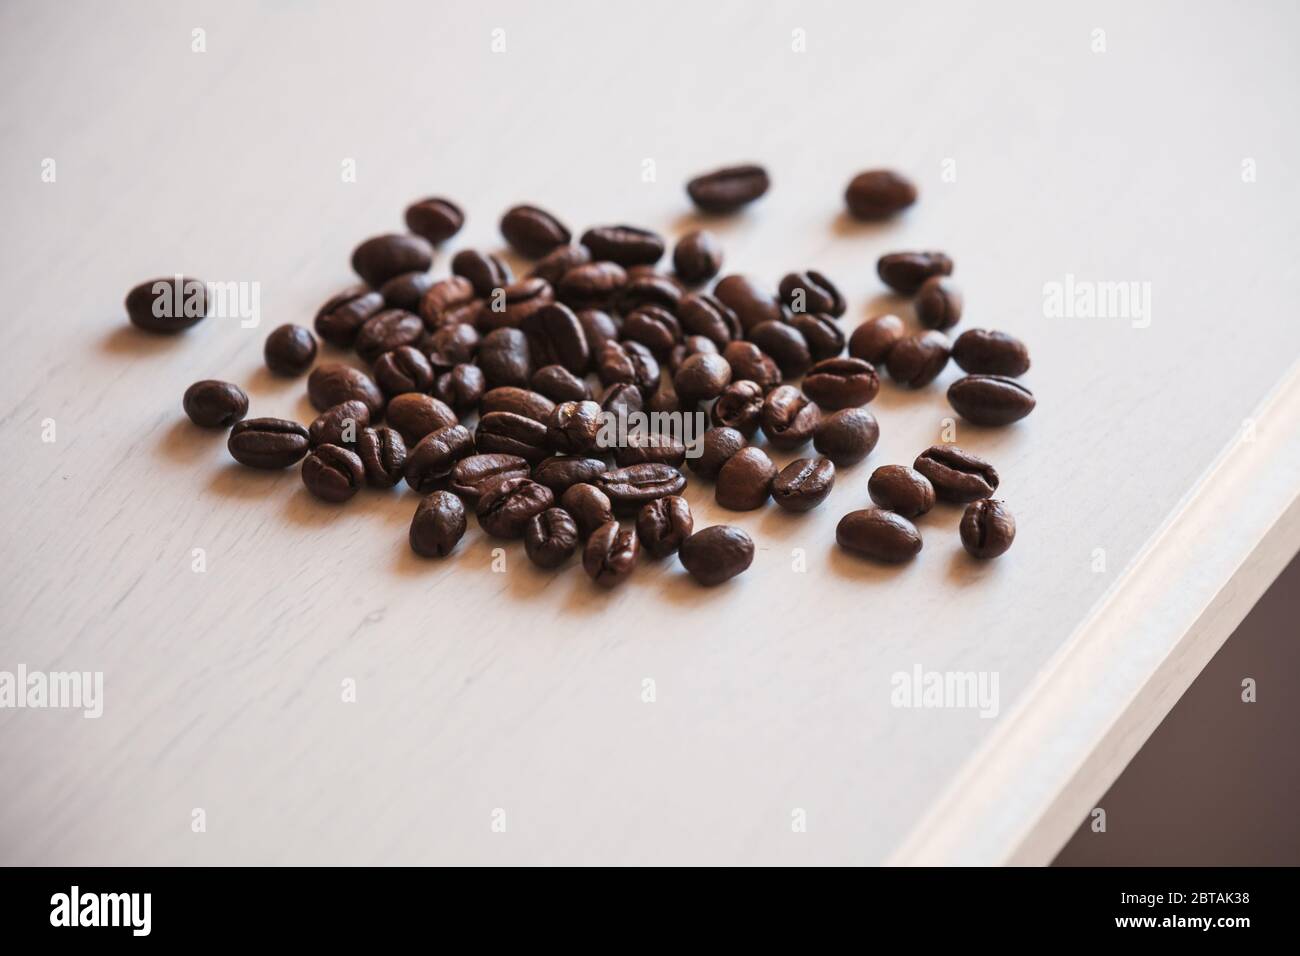 Los granos de café asados están en un escritorio de madera blanca, foto de primer plano con enfoque suave selectivo Foto de stock